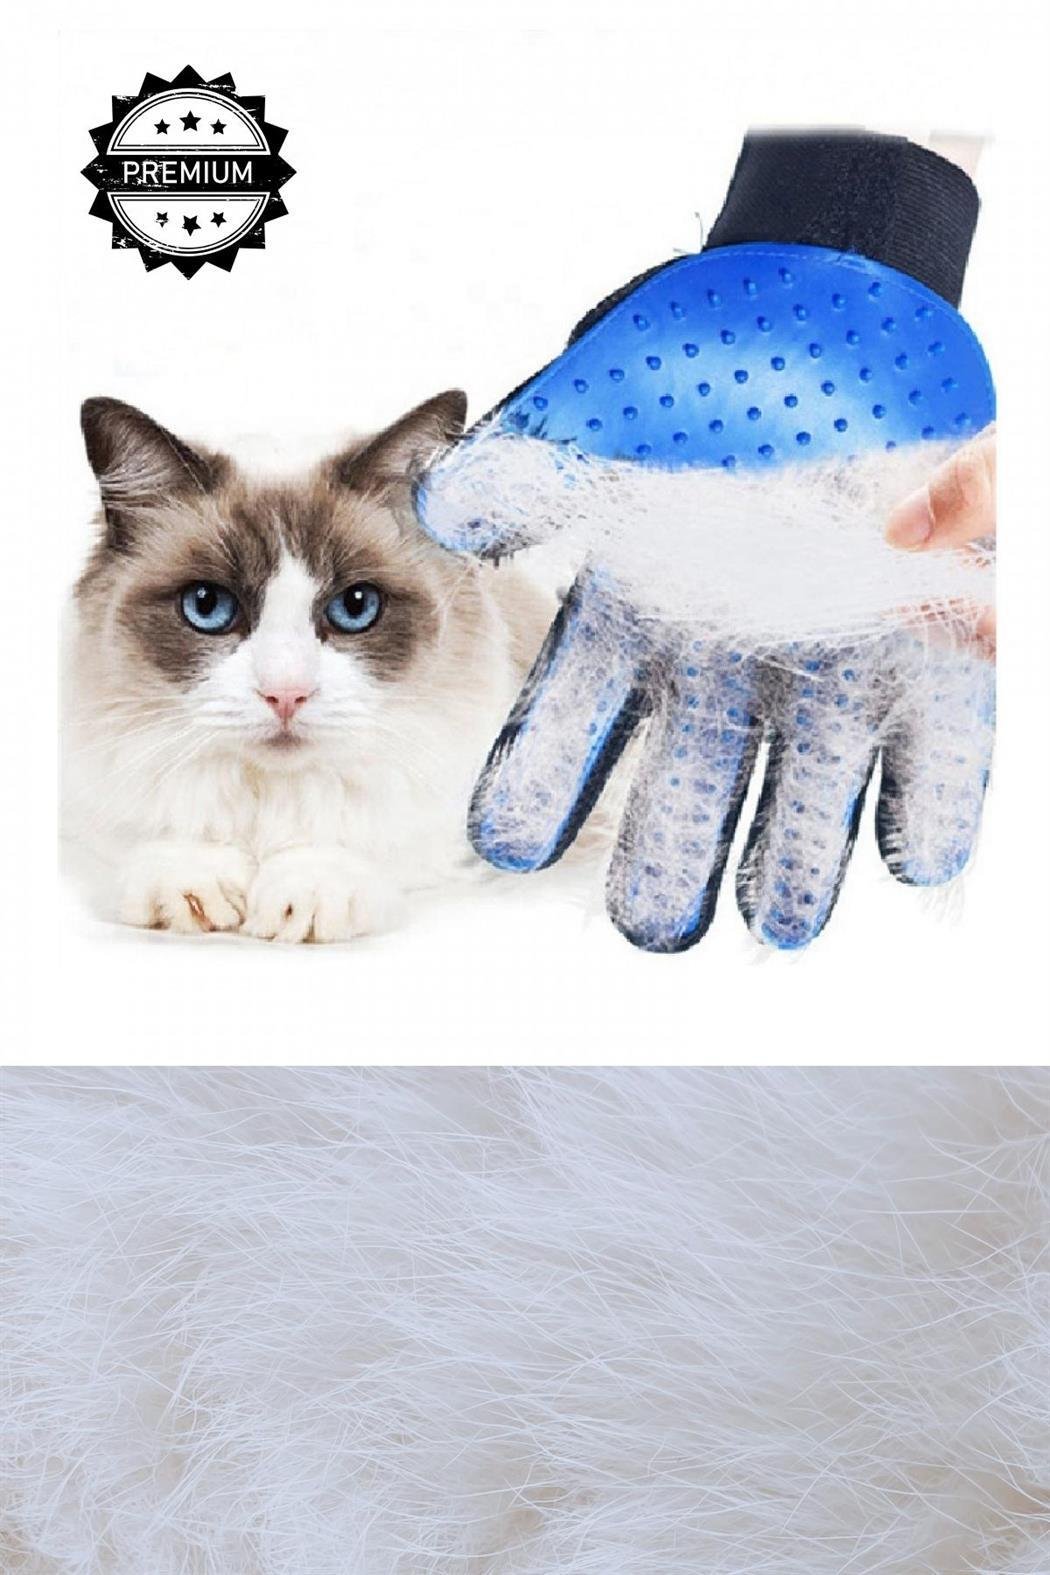 Kedi oyuncağı, kedi tırmalama,kedi tırmalama tahtası, ,tüy toplama eldiveni, kedi fırçası,kedi köpek fırçası ve